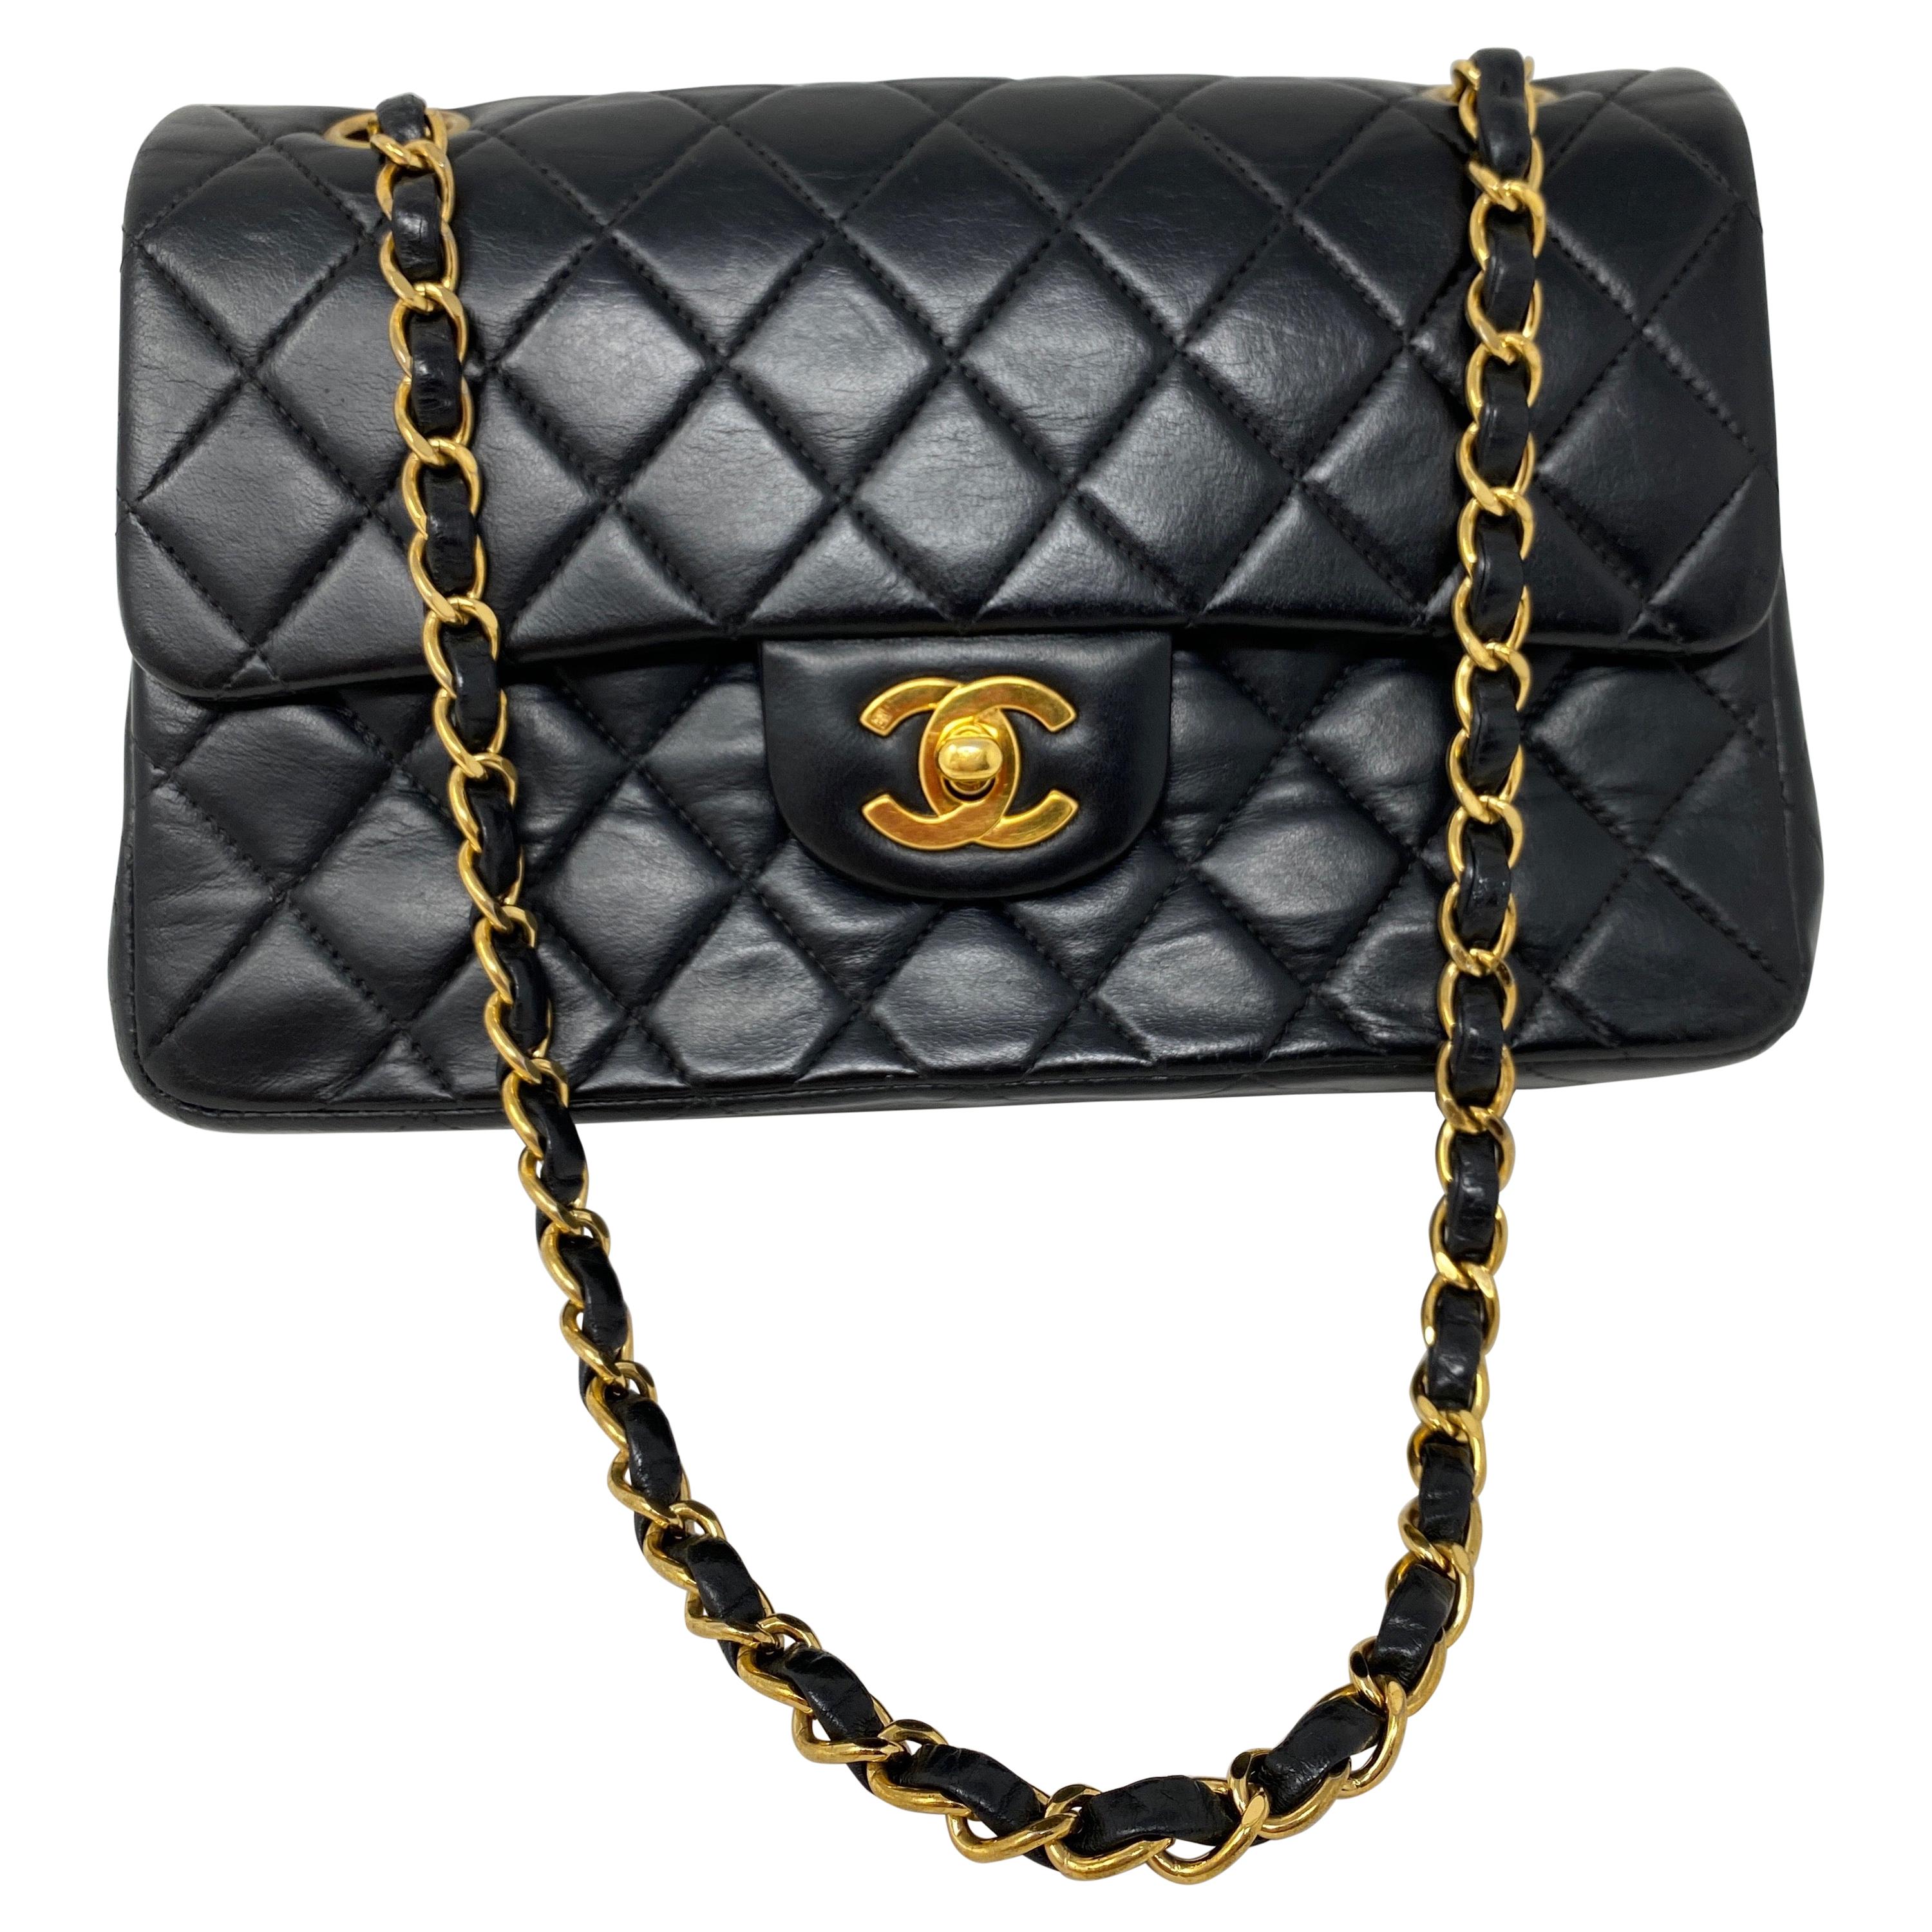 Chanel Black Leather Vintage Flap Bag 